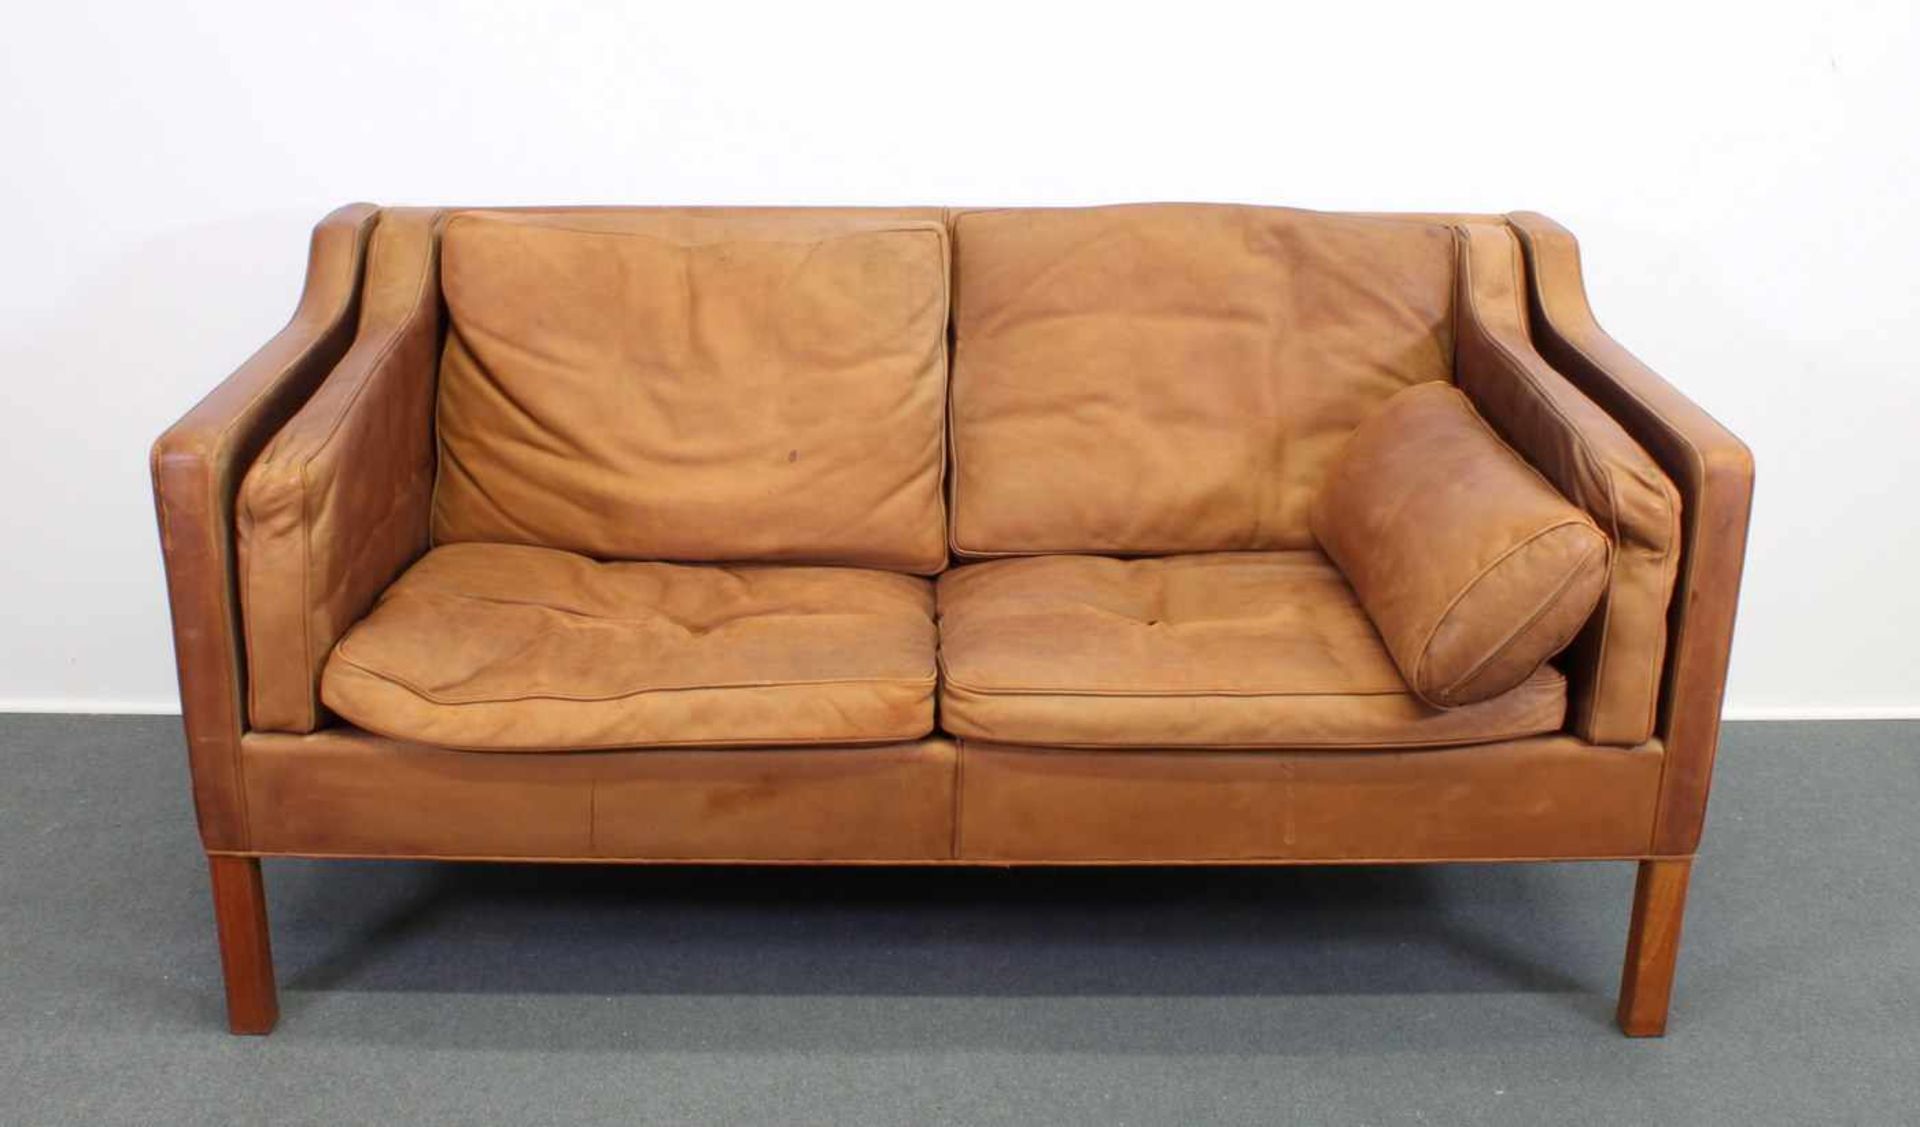 Zweisitzer-Sofa, Design Børge Mogensen (1914-1972), Dänemark, 2. Hälfte 20. Jh., Herstellung